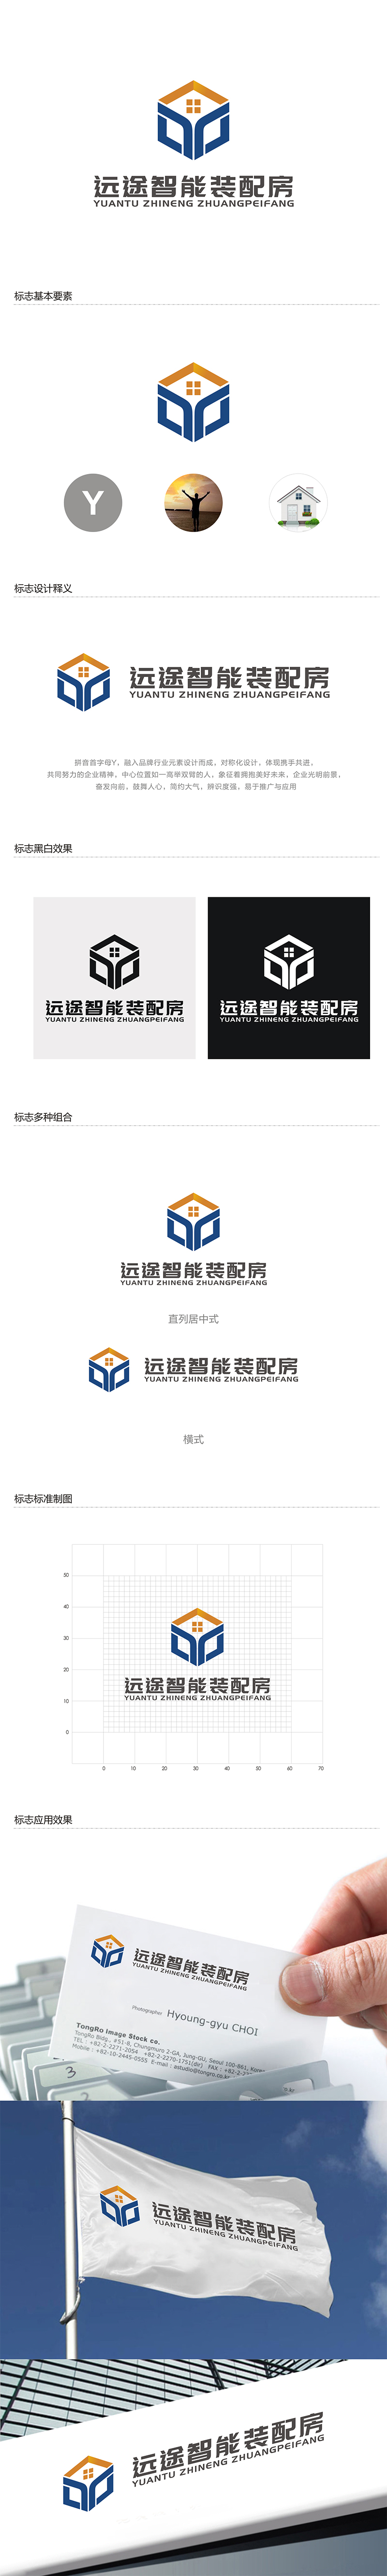 赵锡涛的江苏远途智能装配房有限公司logo设计